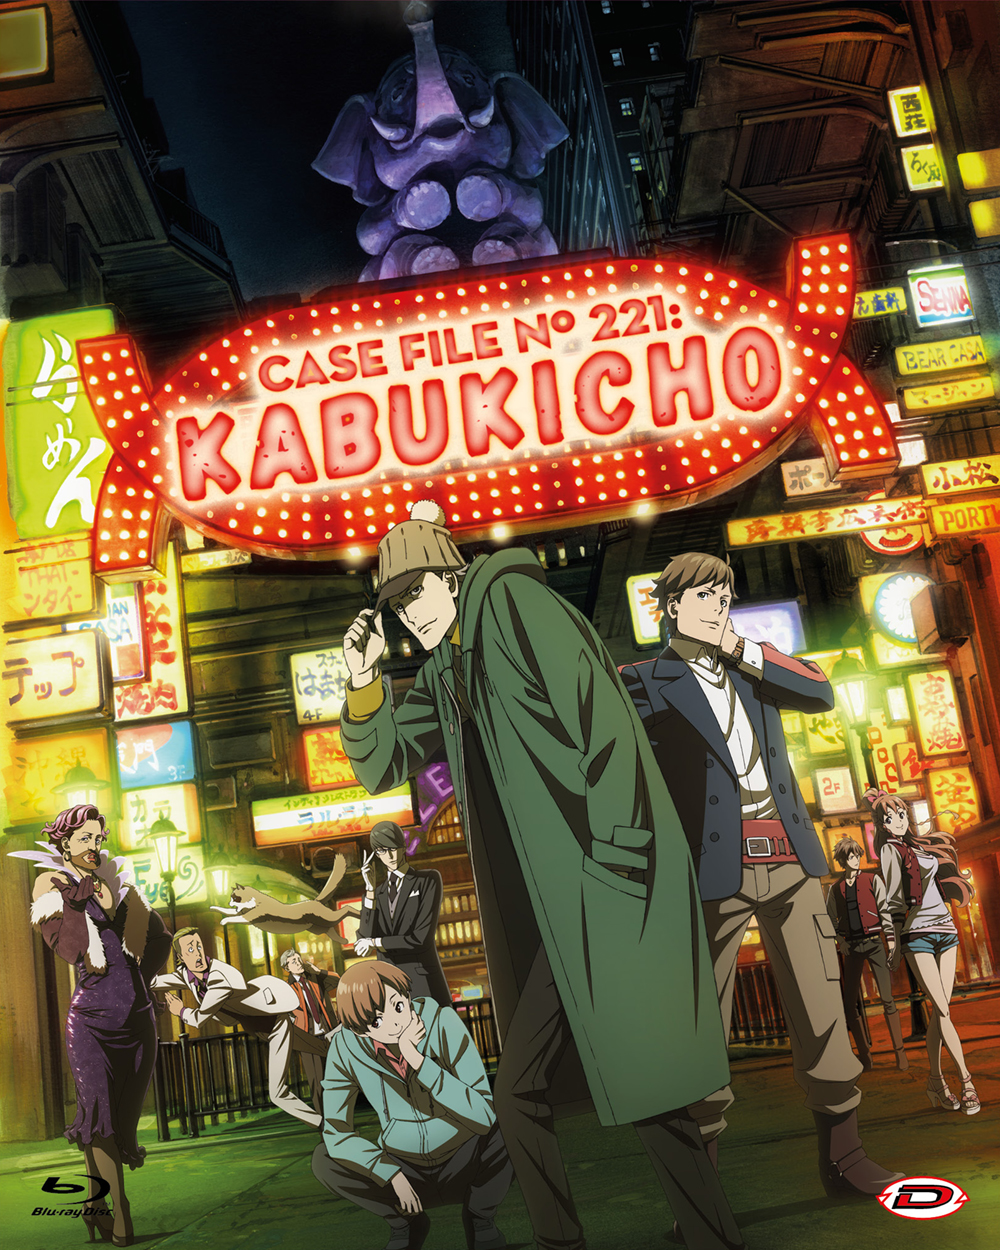 Blu-Ray Case File N.221: Kabukicho - The Complete Series (Eps 01-24+Oav) (4 Blu-Ray) NUOVO SIGILLATO, EDIZIONE DEL 27/01/2021 SUBITO DISPONIBILE